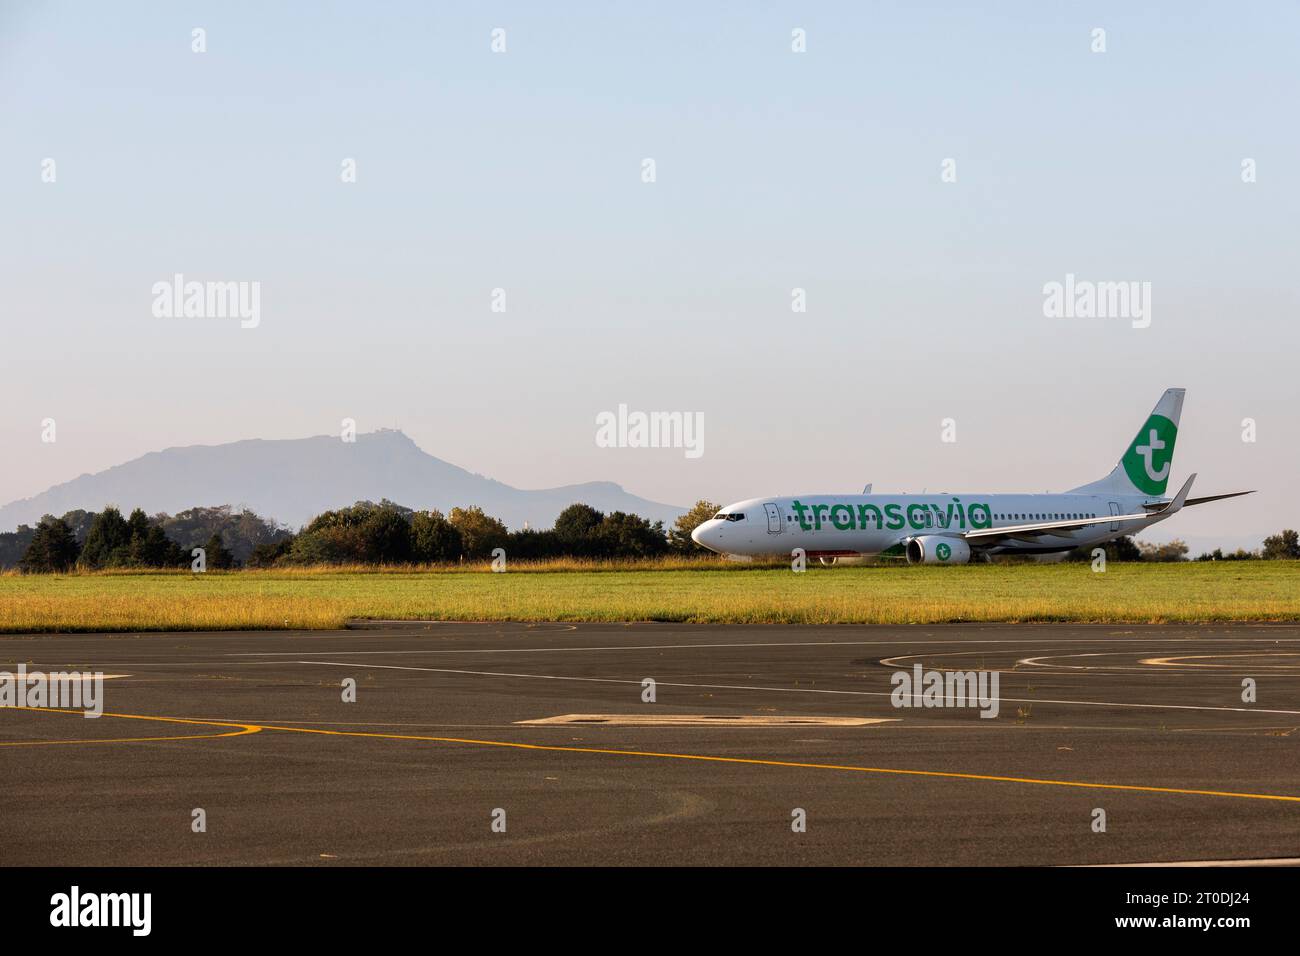 Transavia plane ready to takeoff at Biarritz Airport Stock Photo